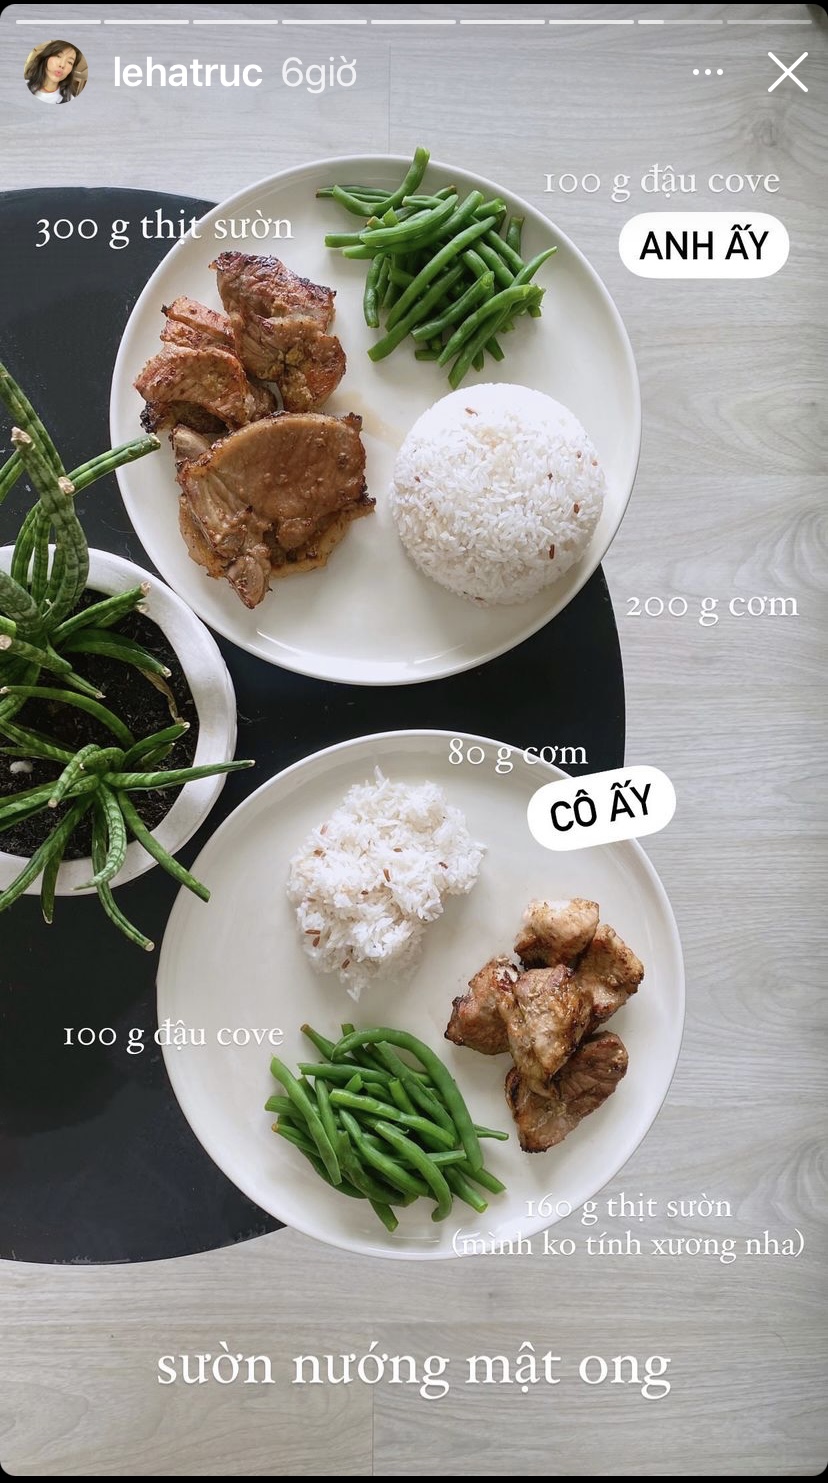 Sườn nướng mật ong ăn kèm cơm và đậu cove luộc là những món ăn xuất hiện trong bữa cơm nhà travel blogger Hà Trúc.